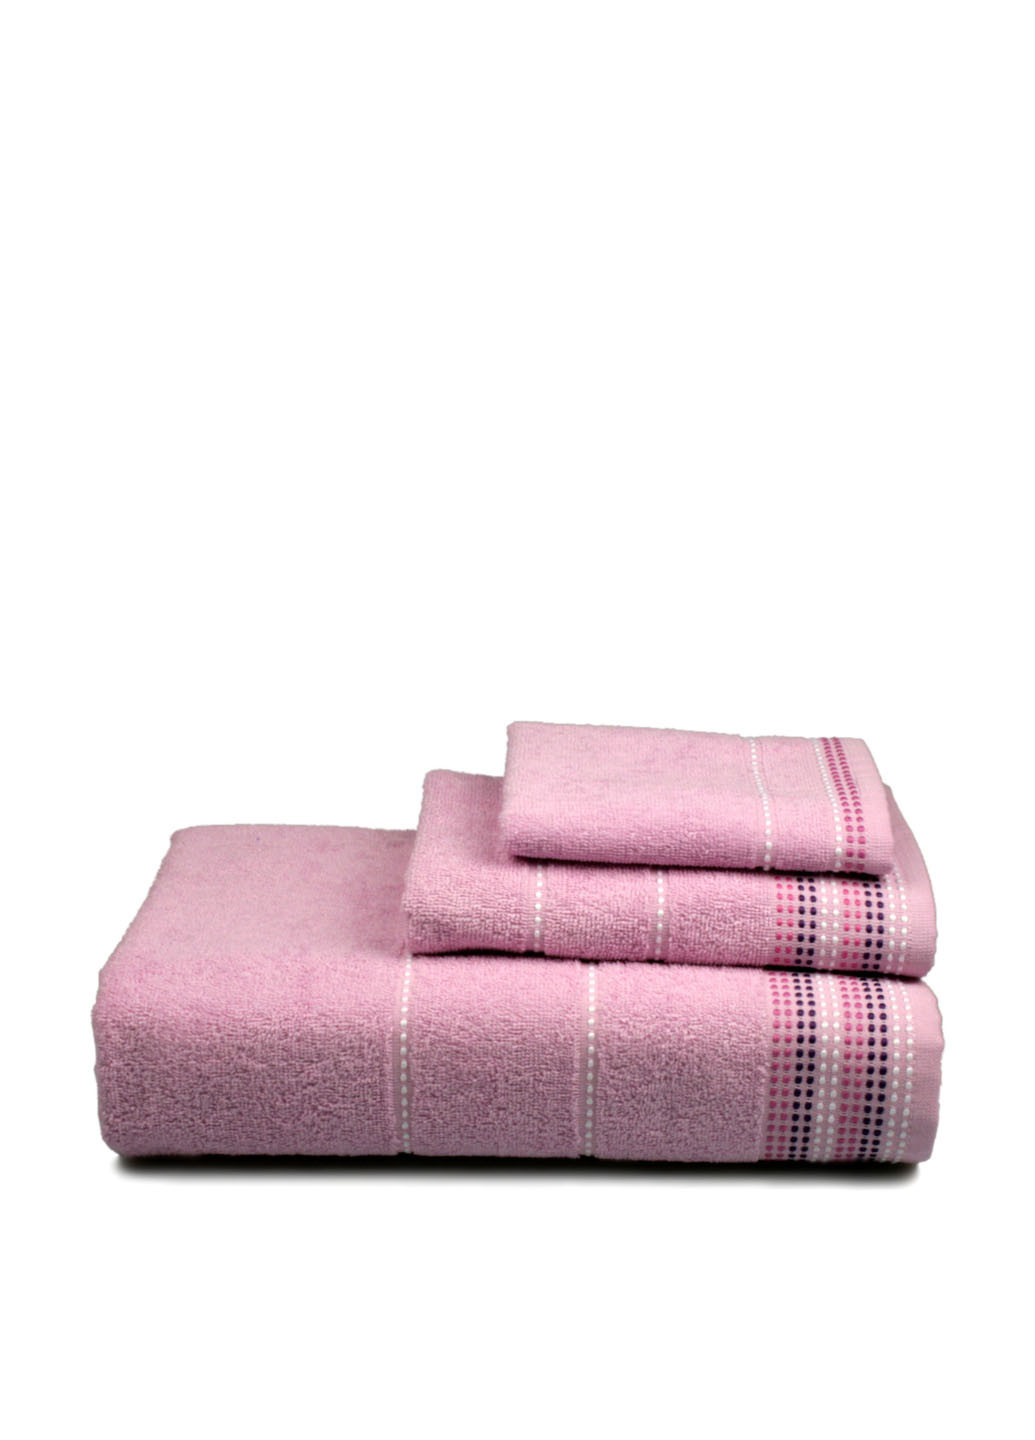 Home Line полотенце, 70х140 см геометрический розовый производство - Турция